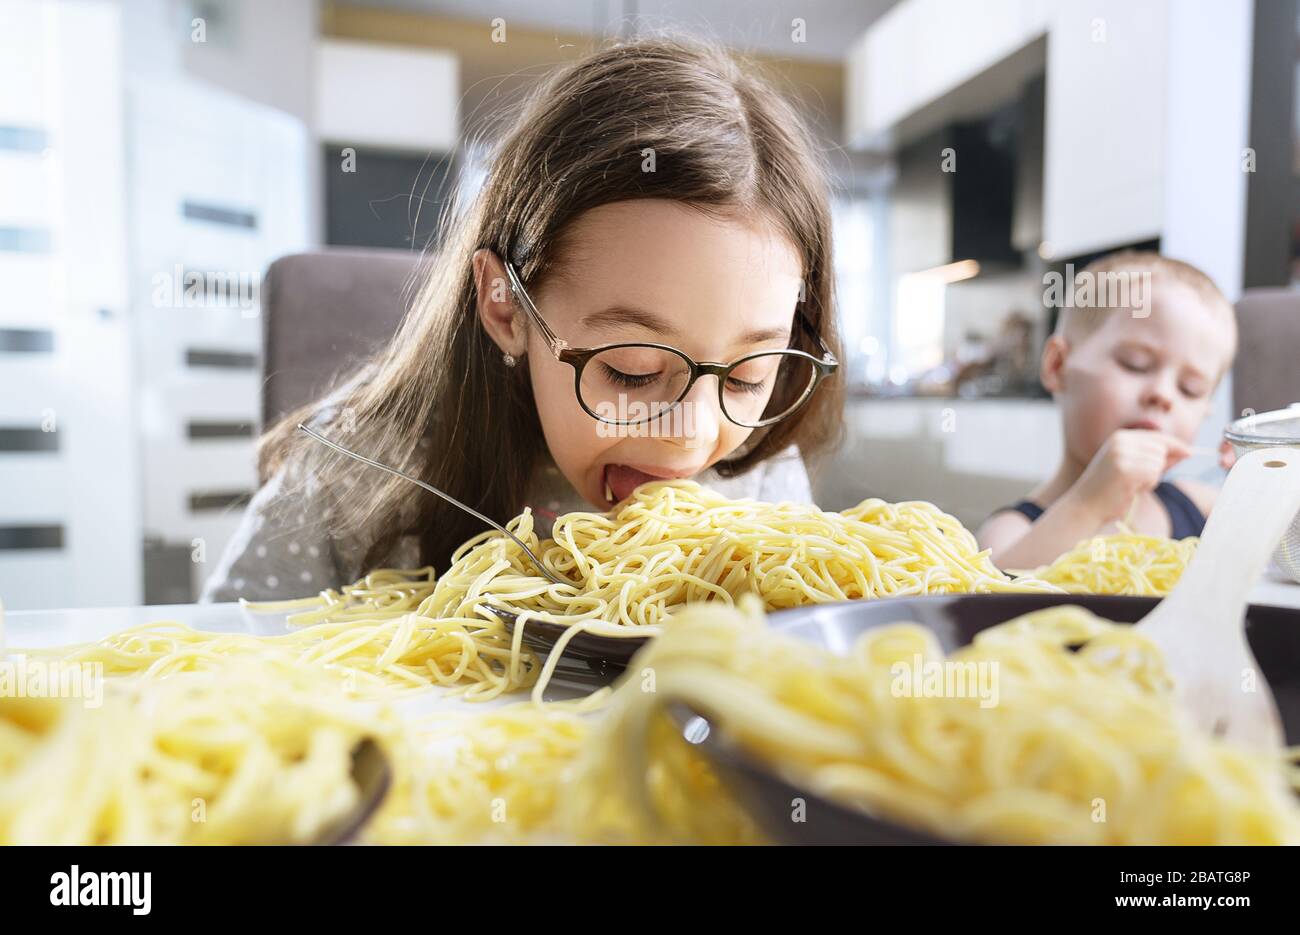 Ritratto di una bambina piccola e carina che mangia una pasta agli spaghetti Foto Stock